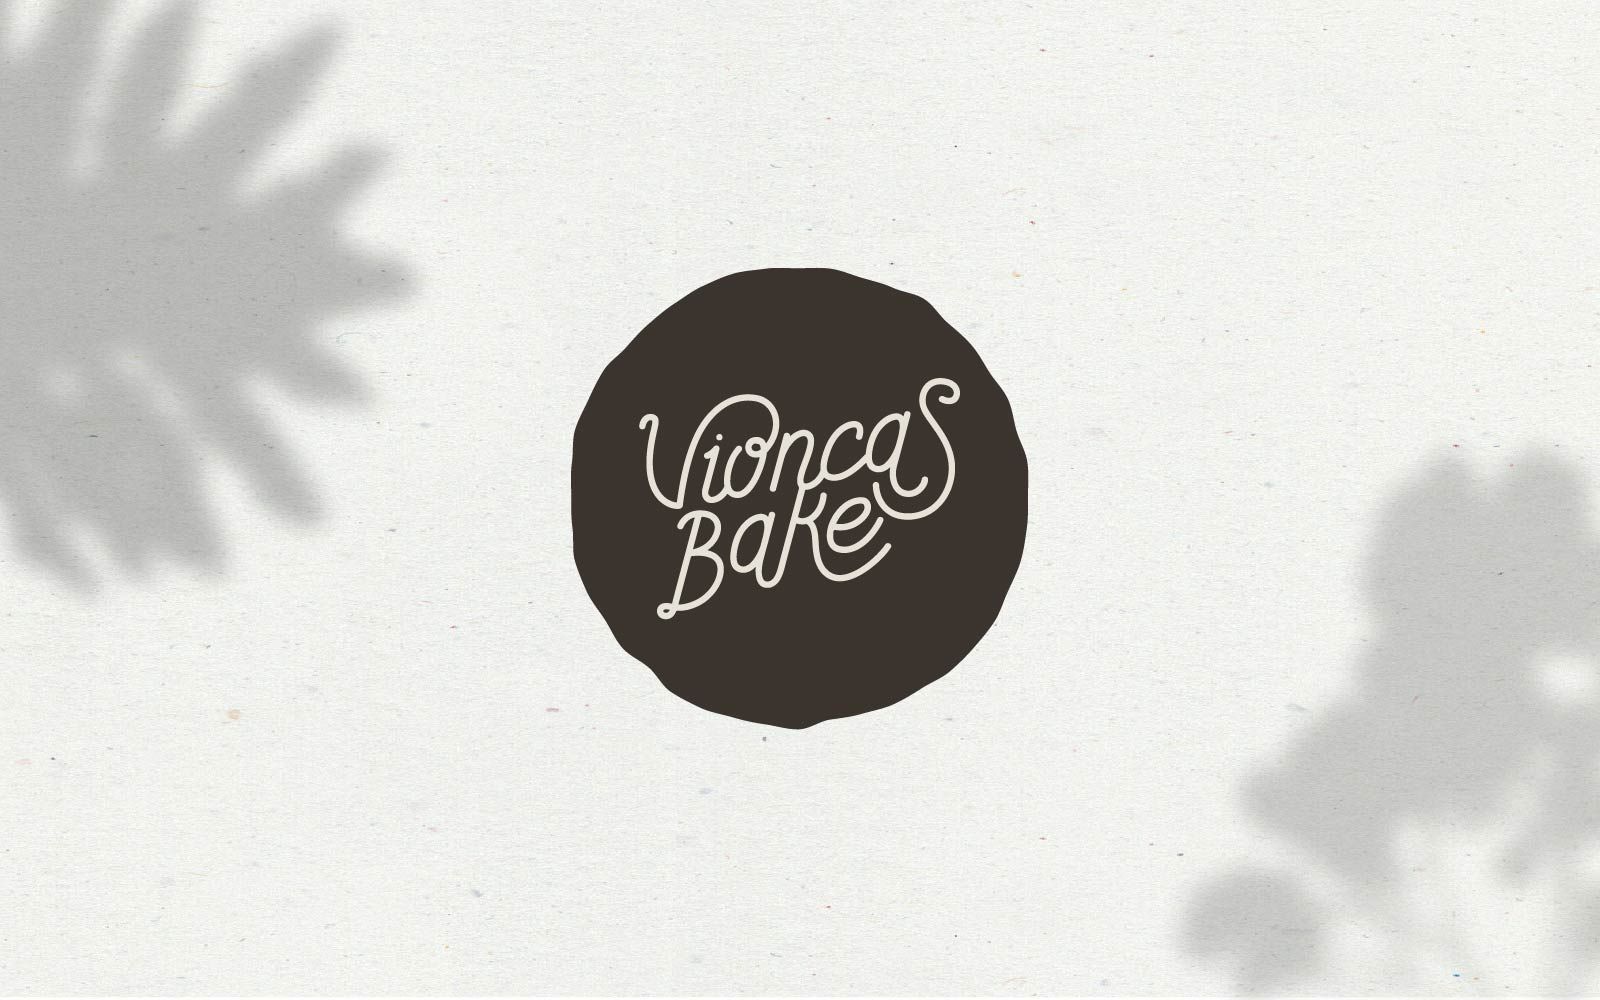 Vioncas Bake  - Diseño Branding y Diseño Logotipo - Vigo